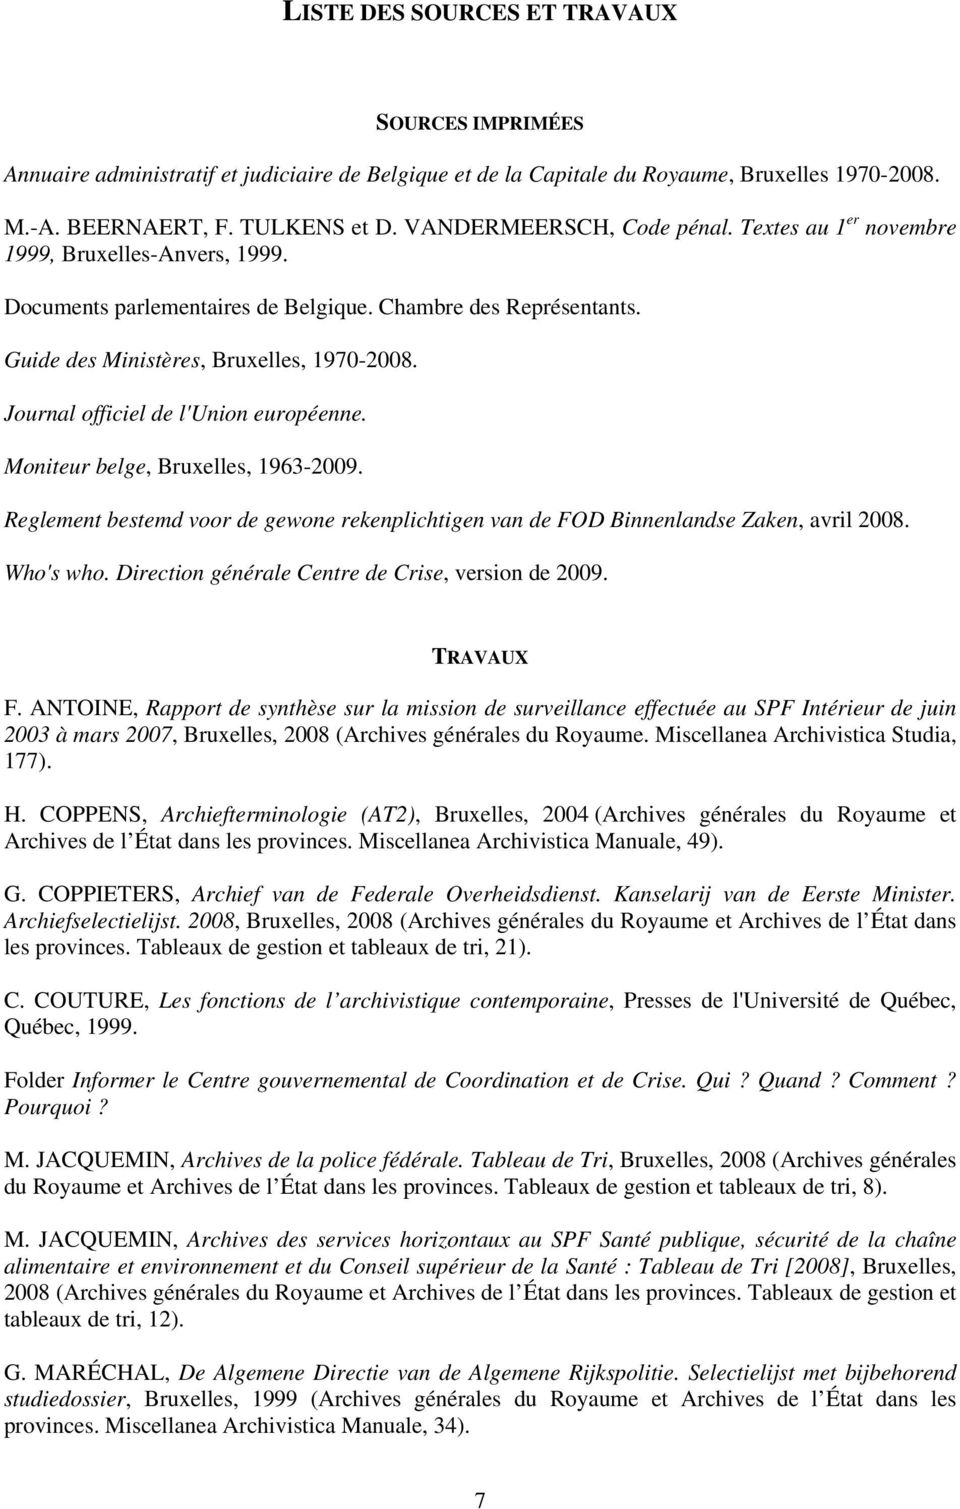 Journal officiel de l'union européenne. Moniteur belge, Bruxelles, 1963-2009. Reglement bestemd voor de gewone rekenplichtigen van de FOD Binnenlandse Zaken, avril 2008. Who's who.